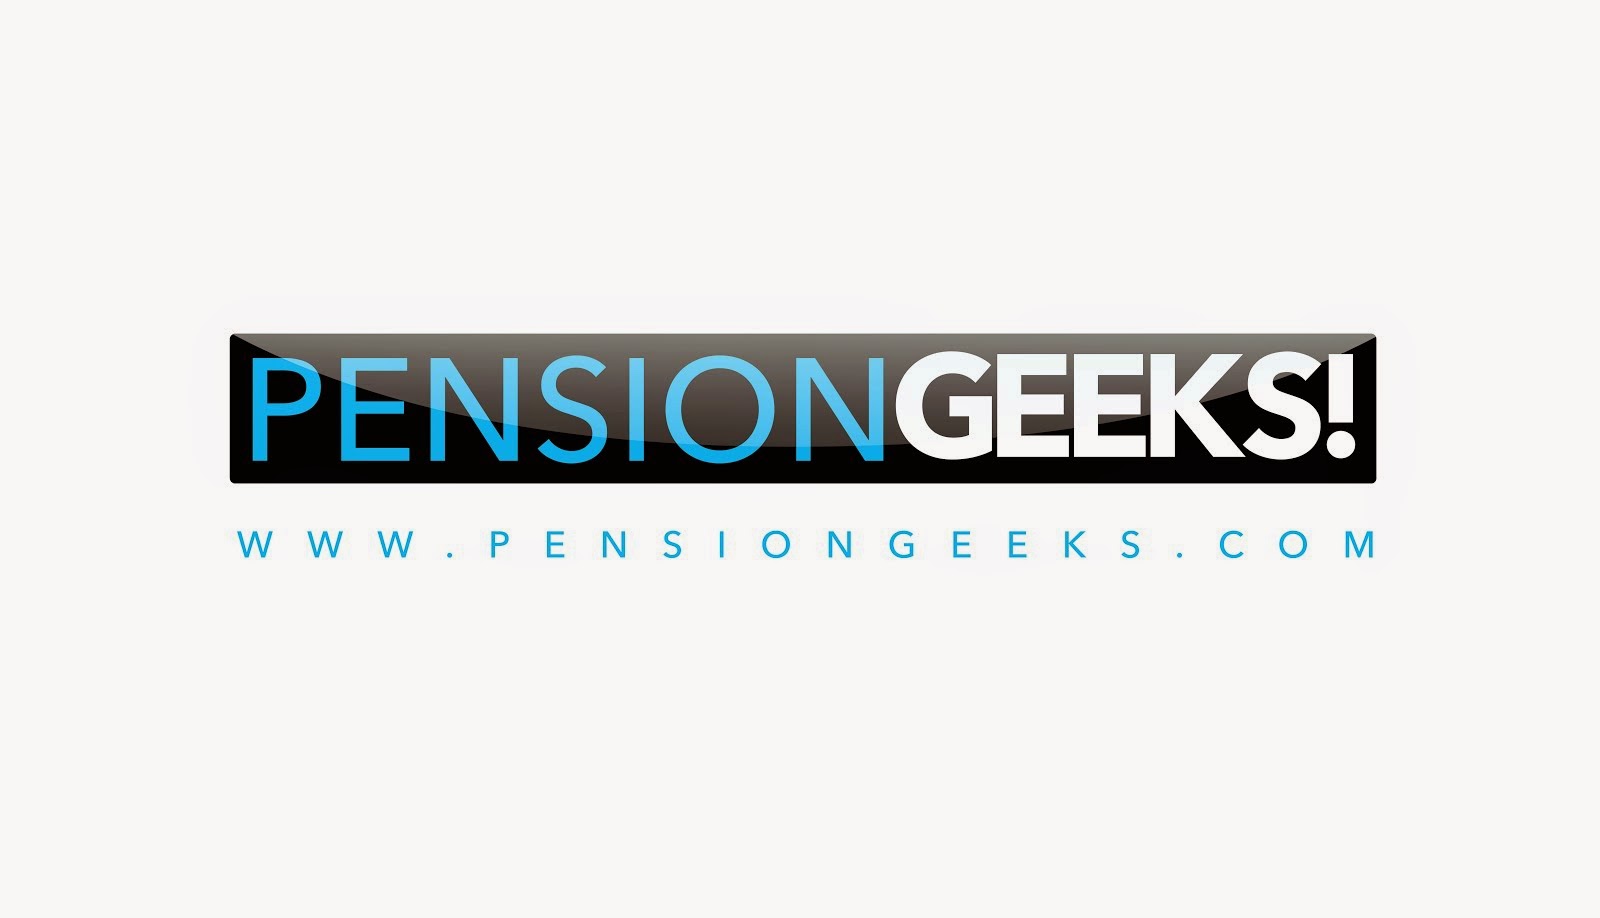 Pension Geeks!